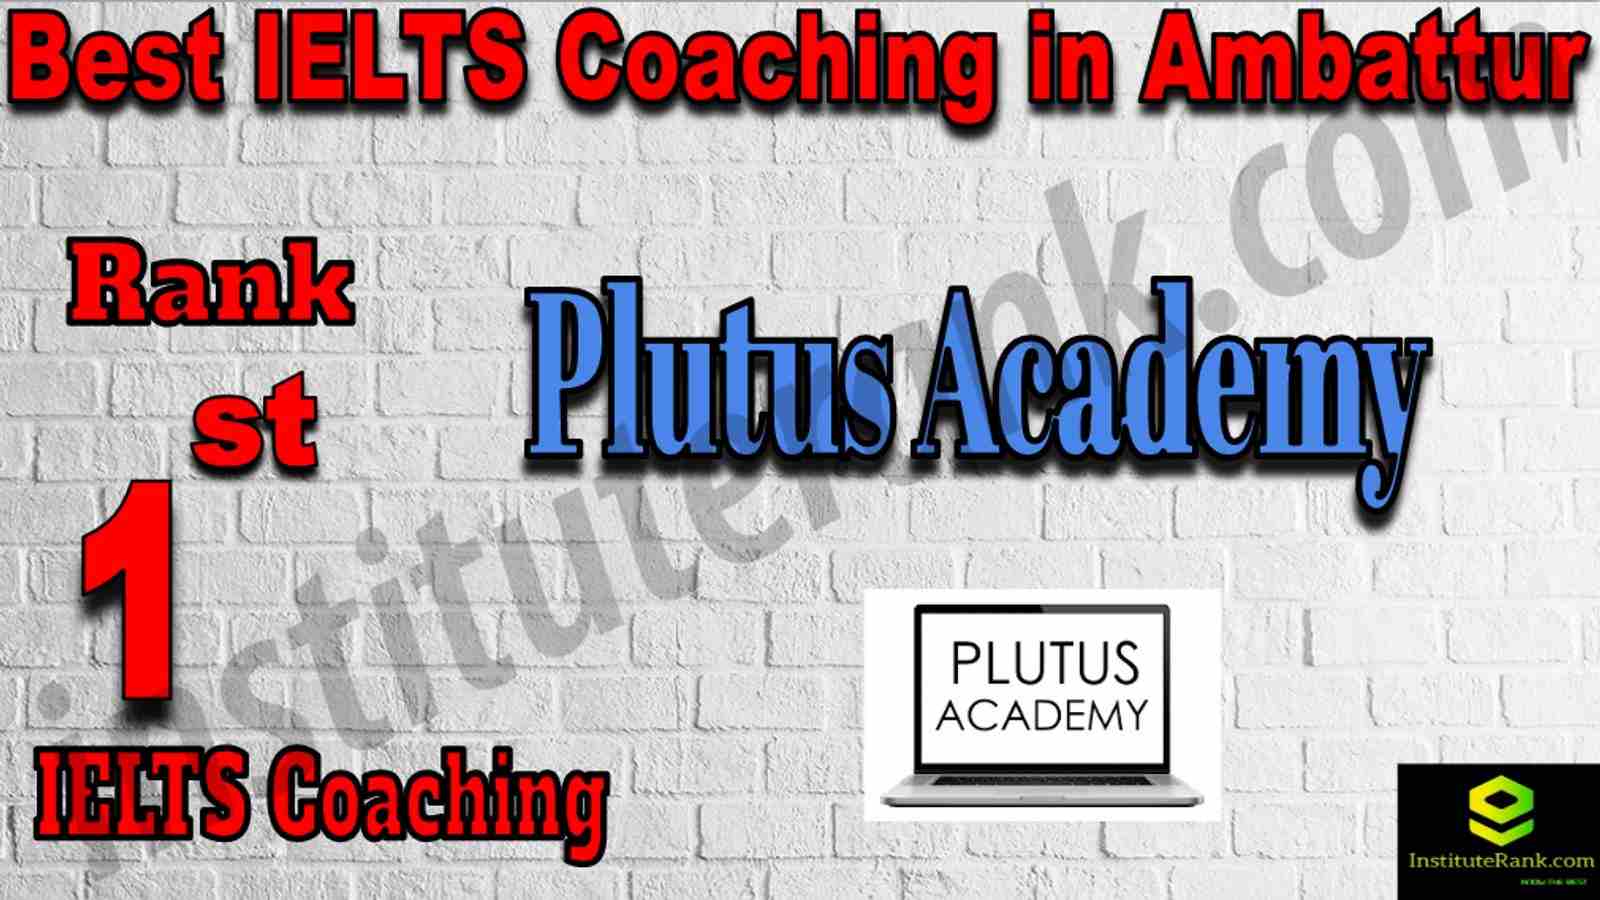 1st Best IELTS Coaching in Ambattur